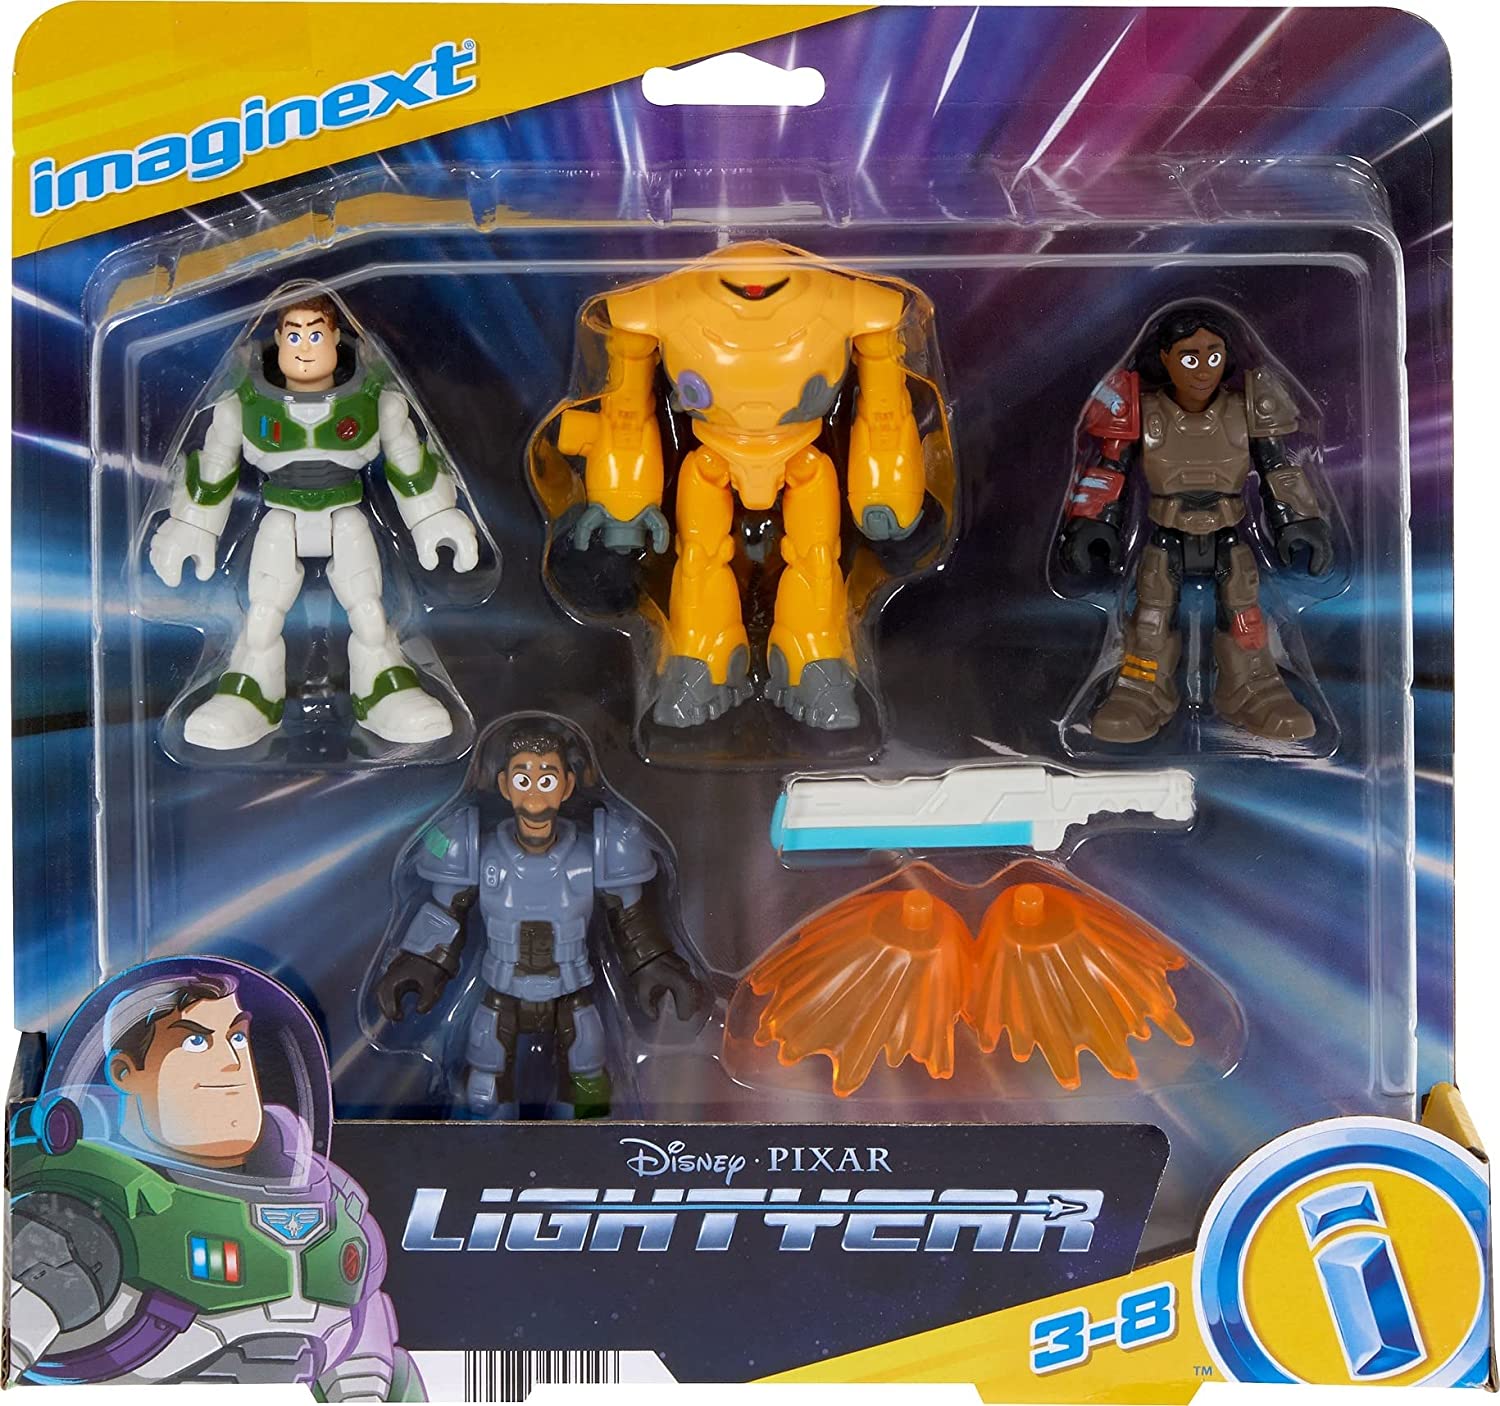 Fisher-Price Imaginext HGT27 - Jr. ZAP Patrol Multipack mit Disney und Pixar, Figurenset mit 4 beweglichen Figuren